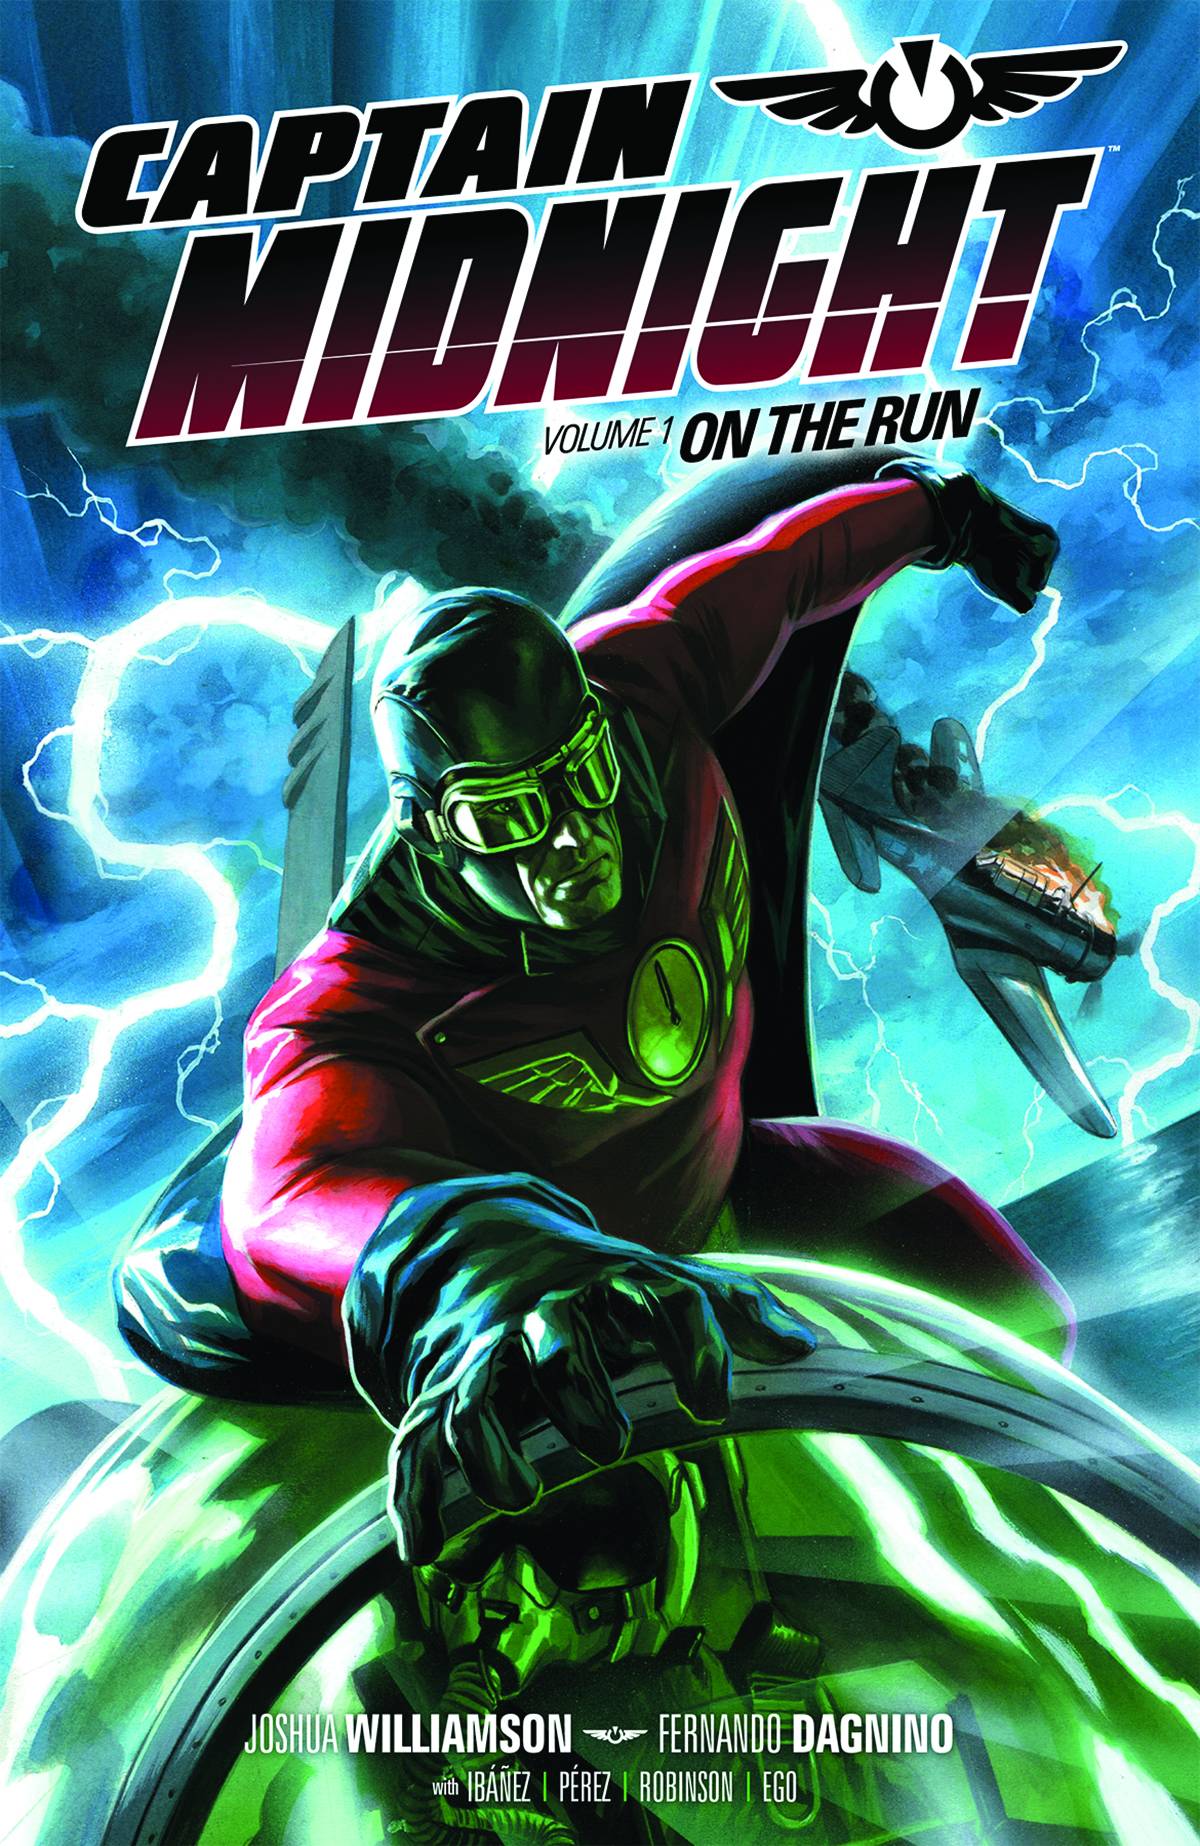 Captain Midnight Graphic Novel Volume 1 on the Run